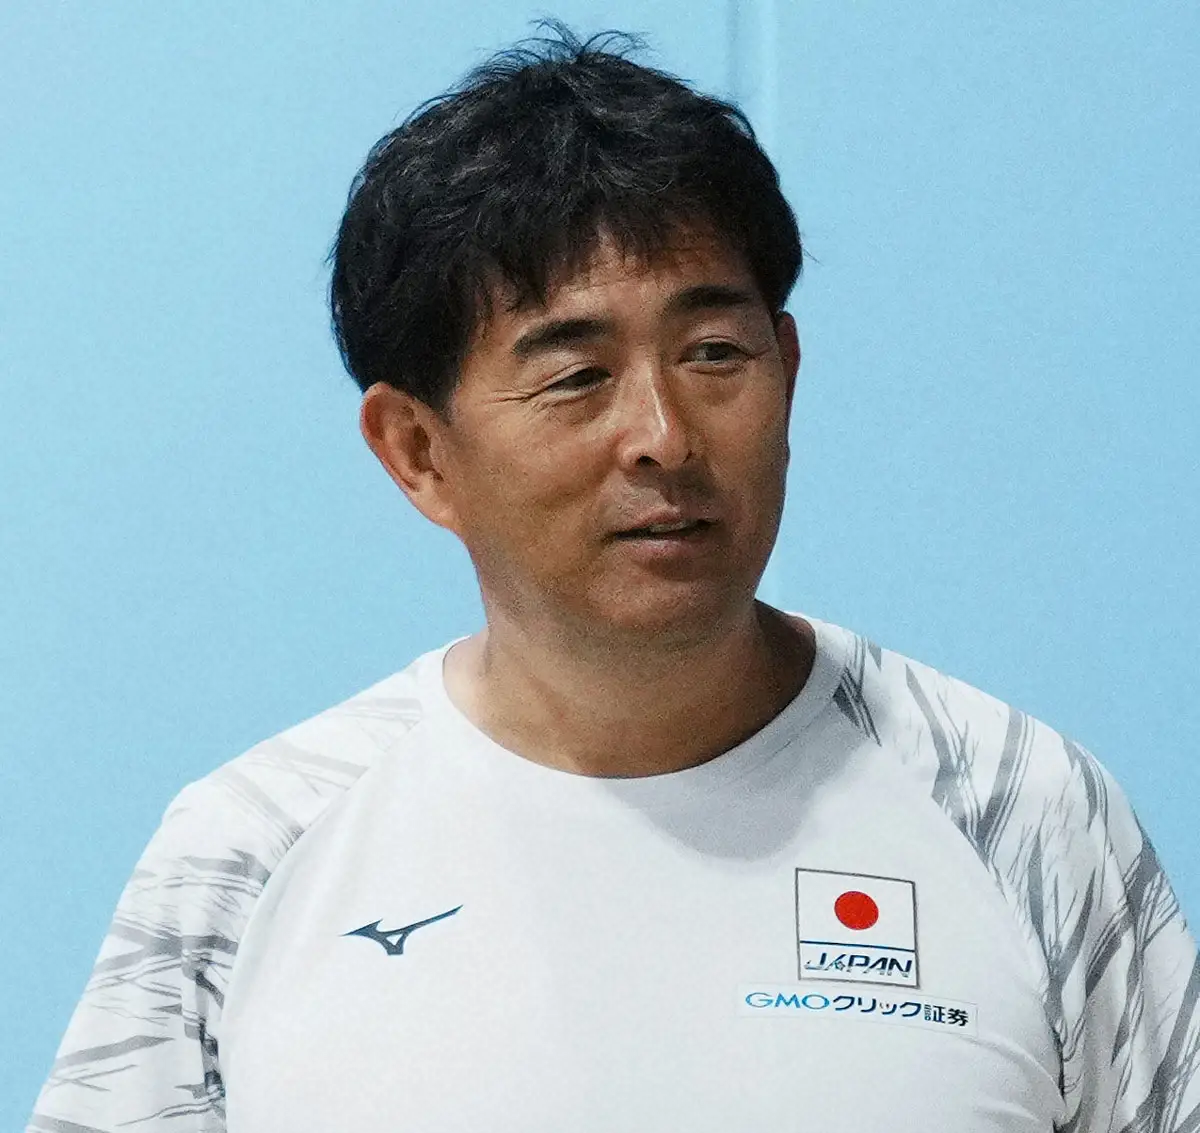 【競泳】平井伯昌コーチが6大会連続のメダリスト輩出に意欲「自分自身のキャリアのためにも」